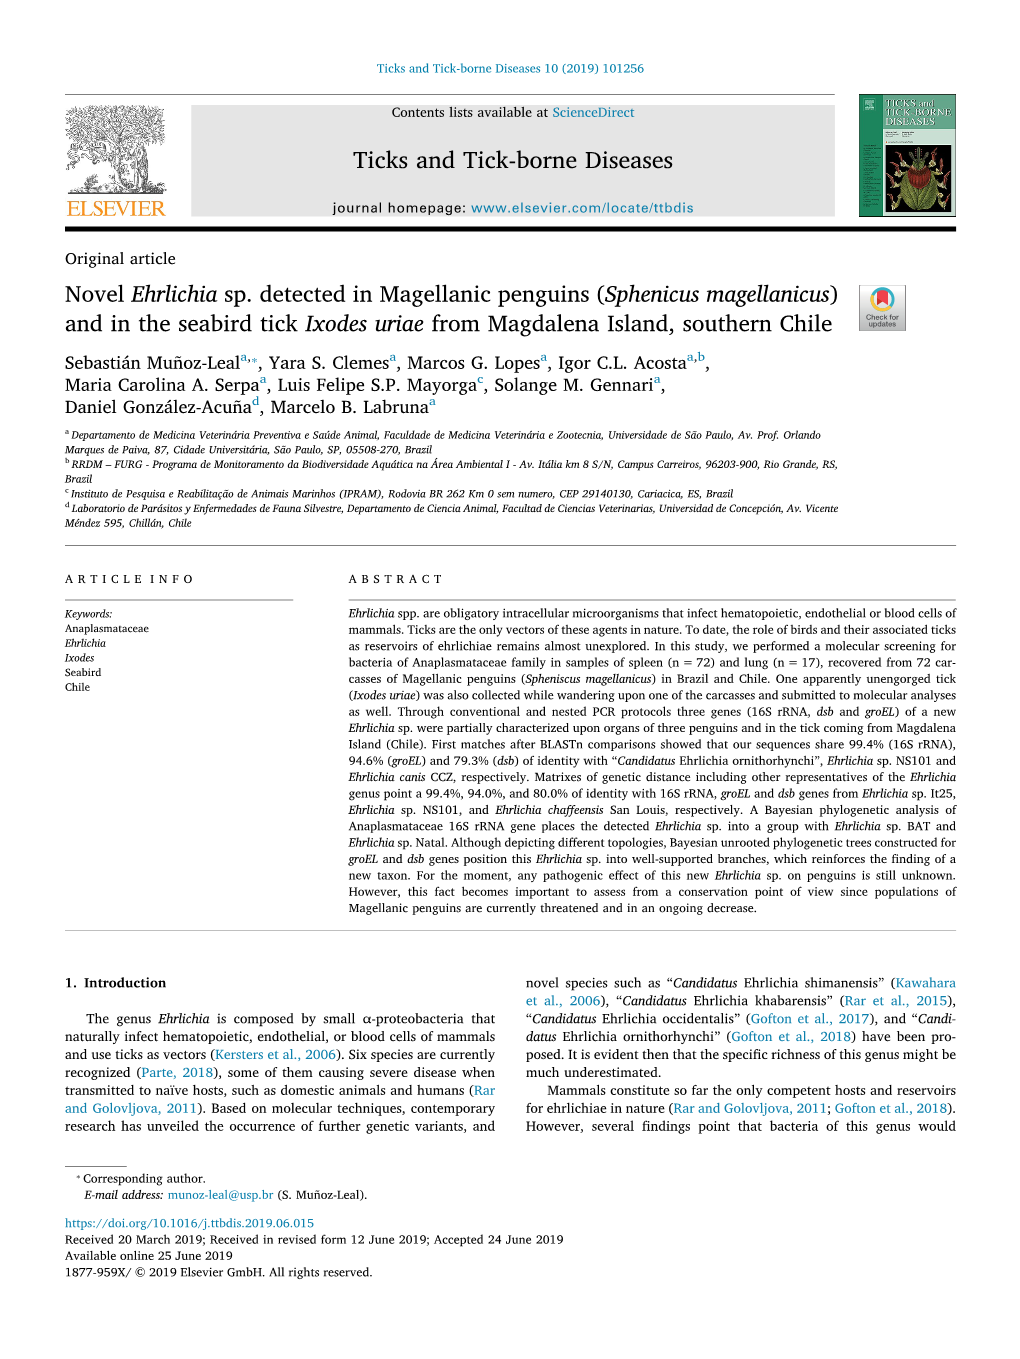 Novel Ehrlichia Sp. Detected in Magellanic Penguins (Sphenicus